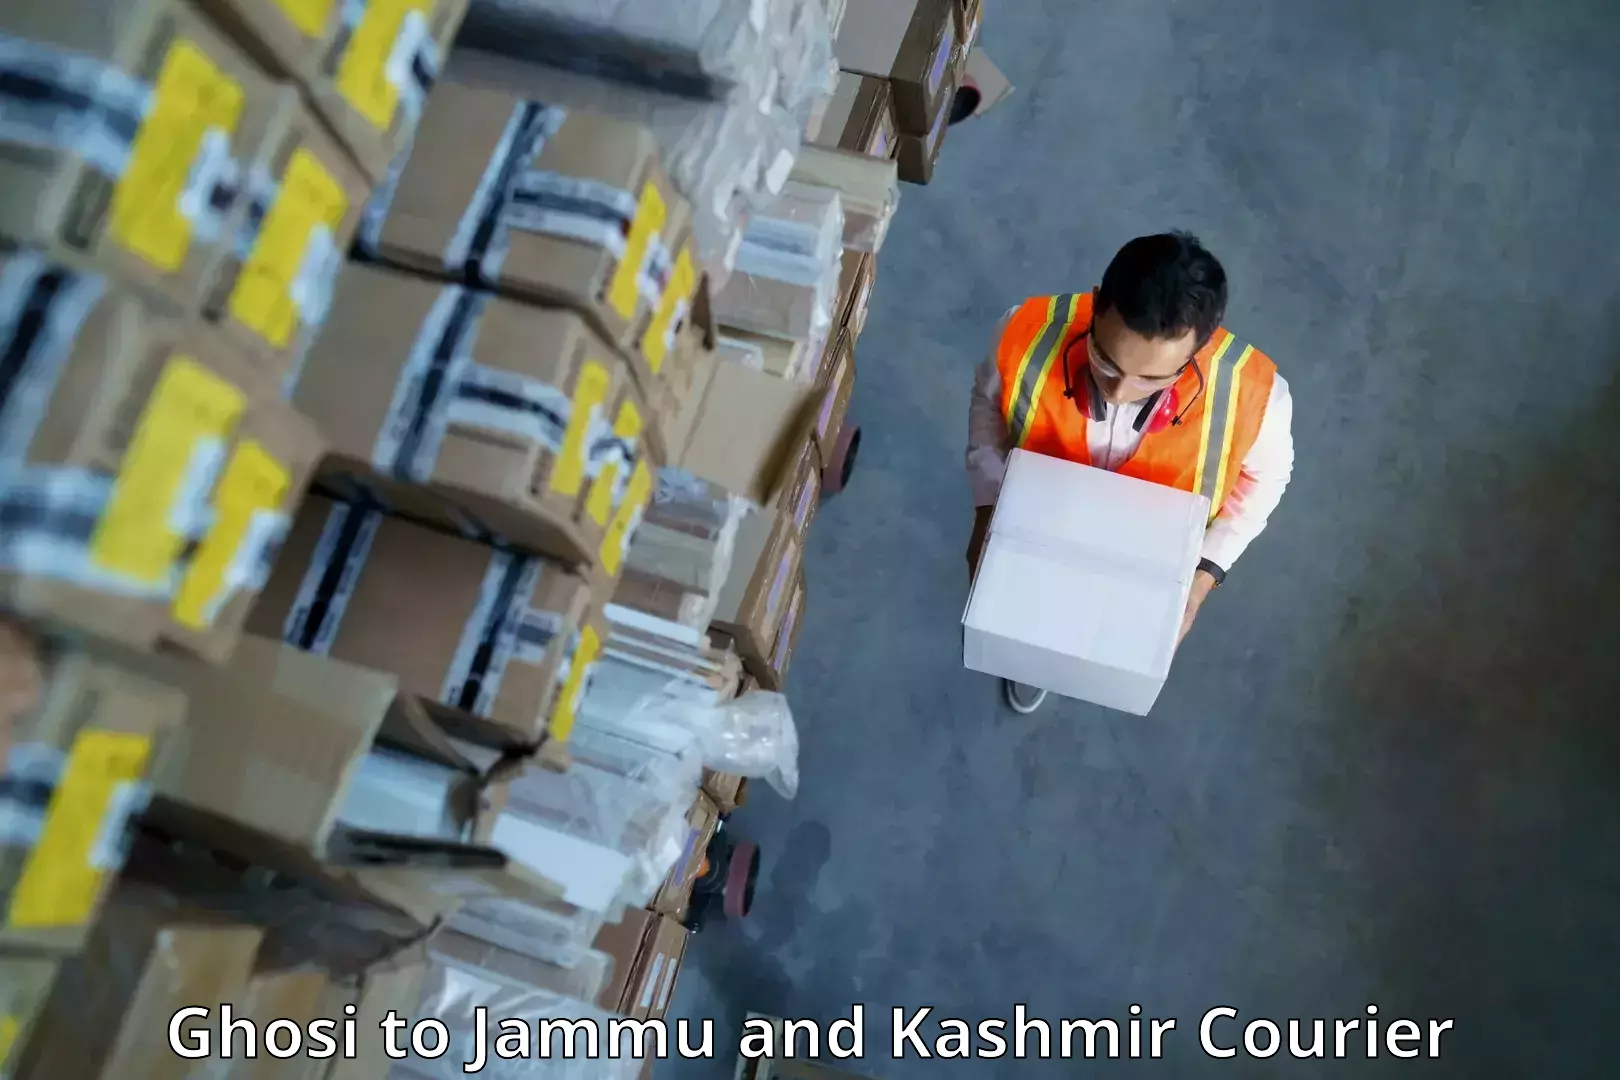 Express logistics service Ghosi to Jammu and Kashmir